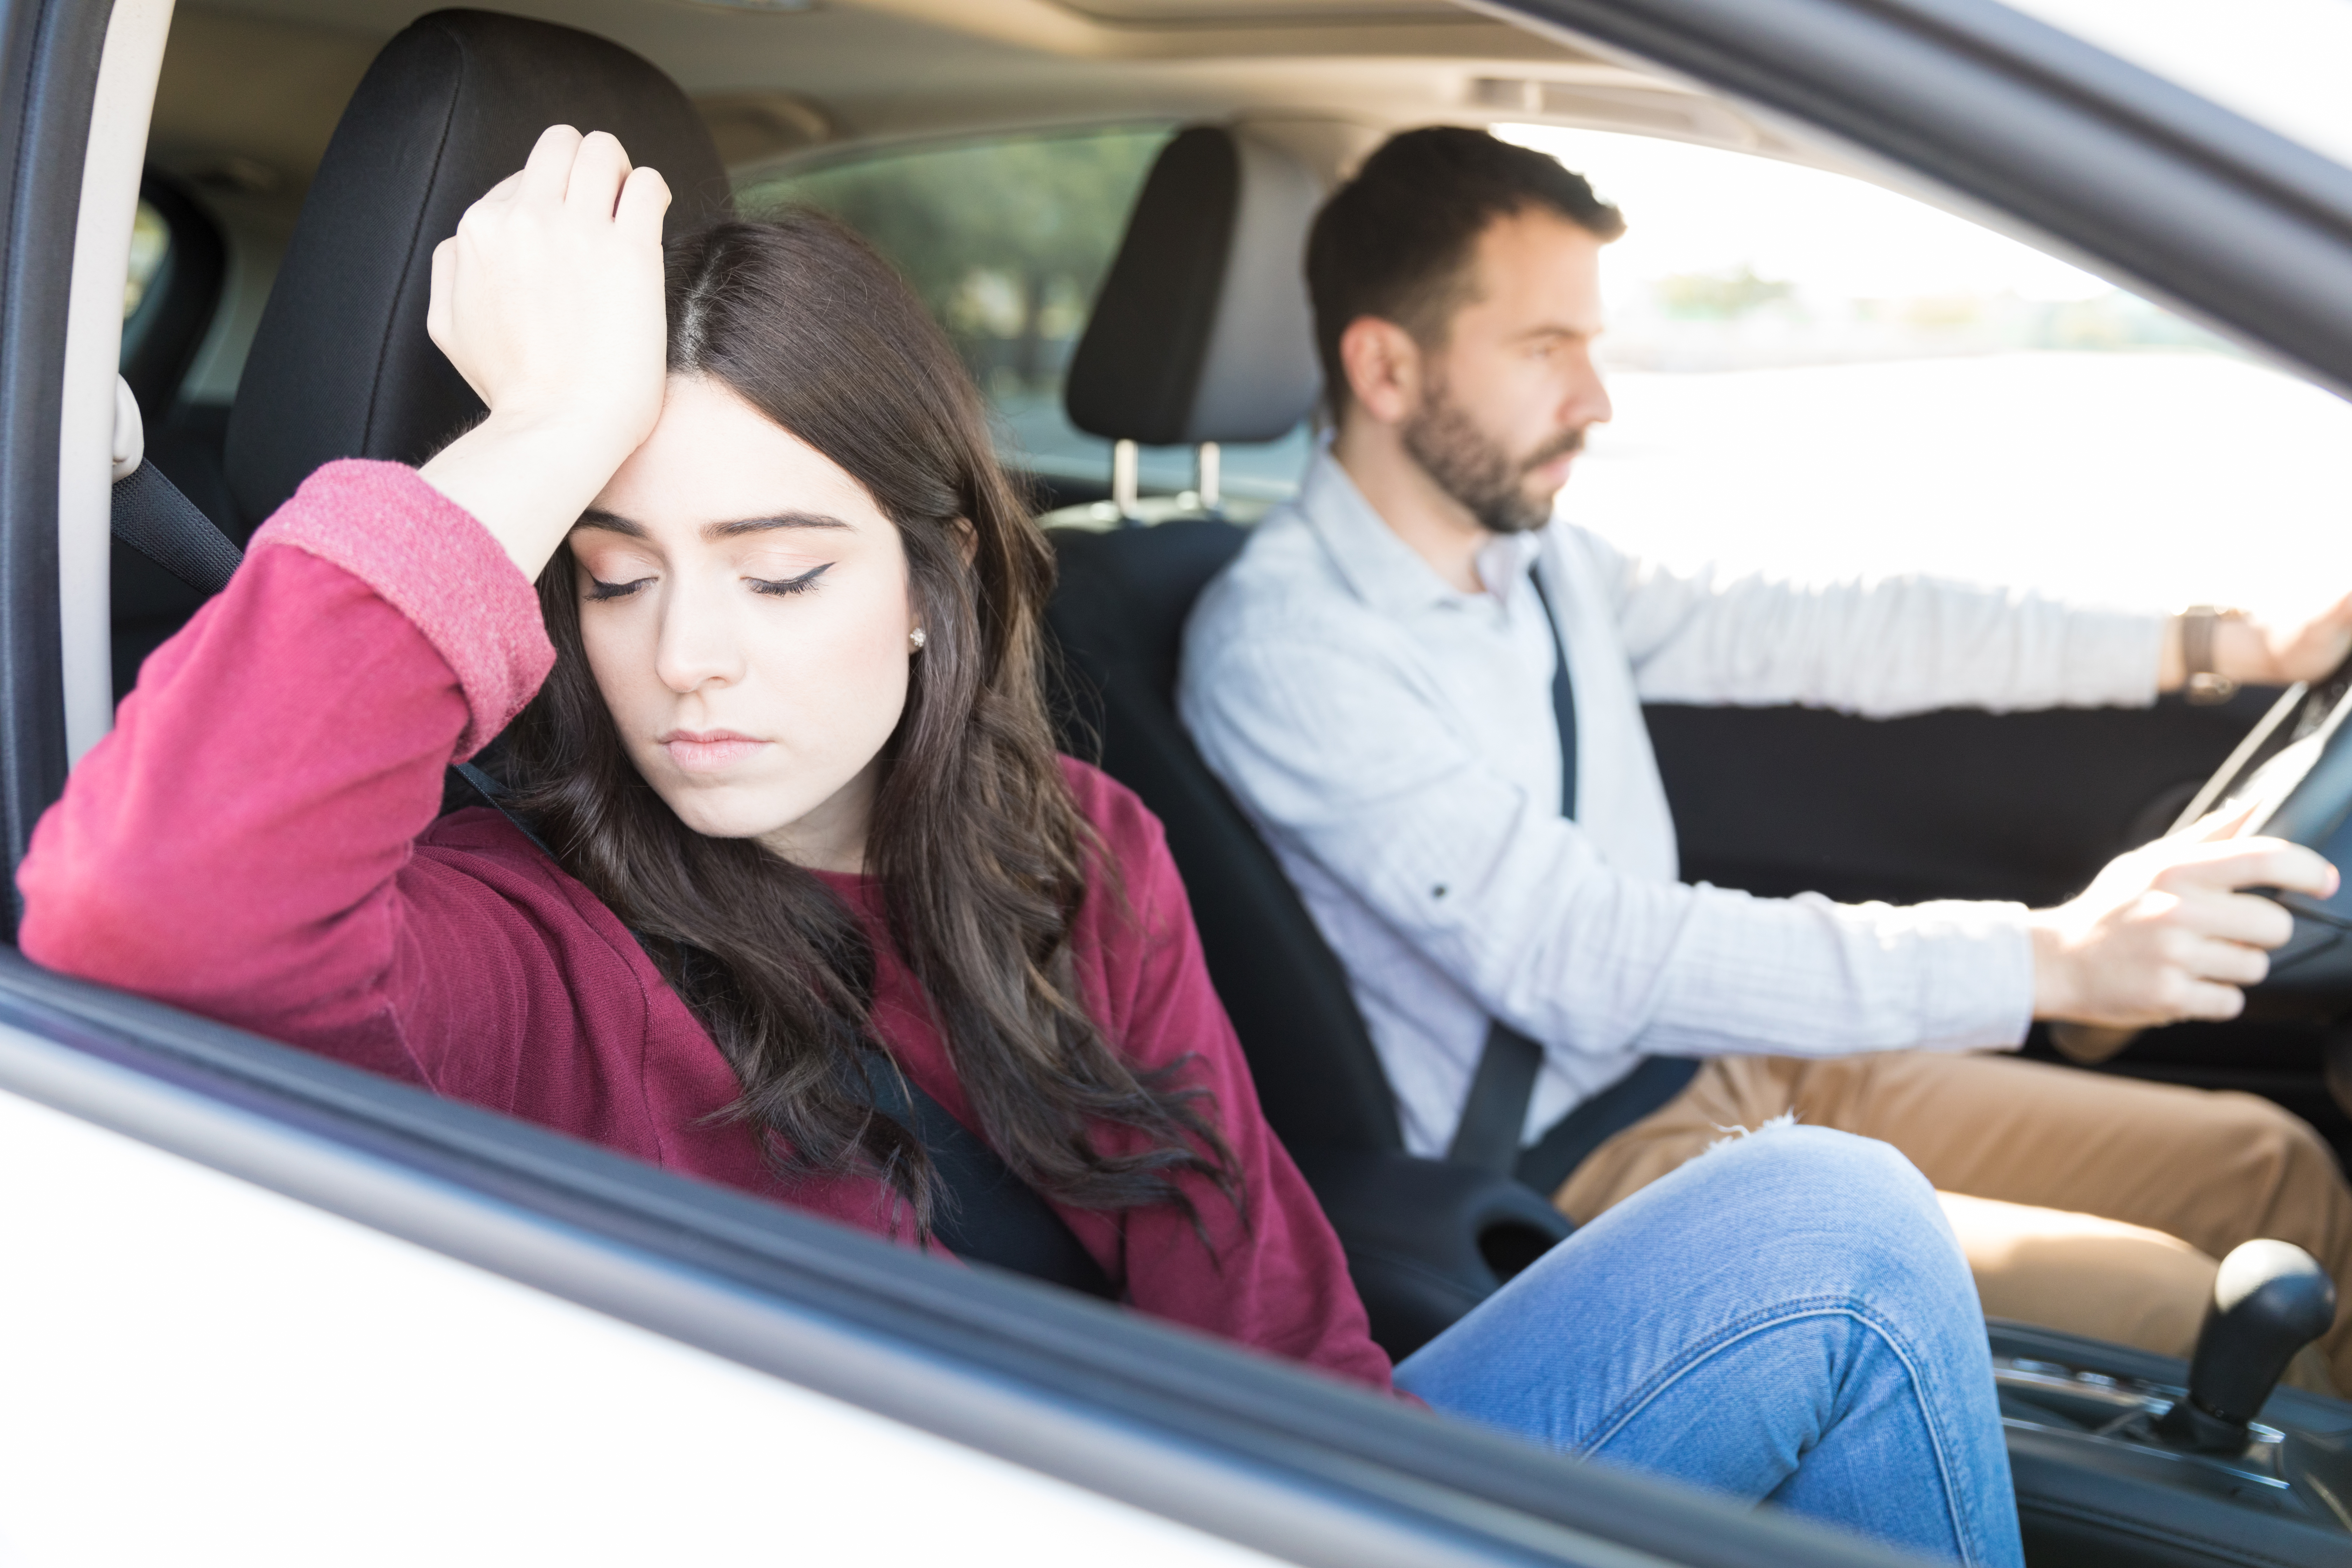 Joven atractiva y triste sentada en el Automóvil con su novio durante un viaje | Fuente: Shutterstock.com